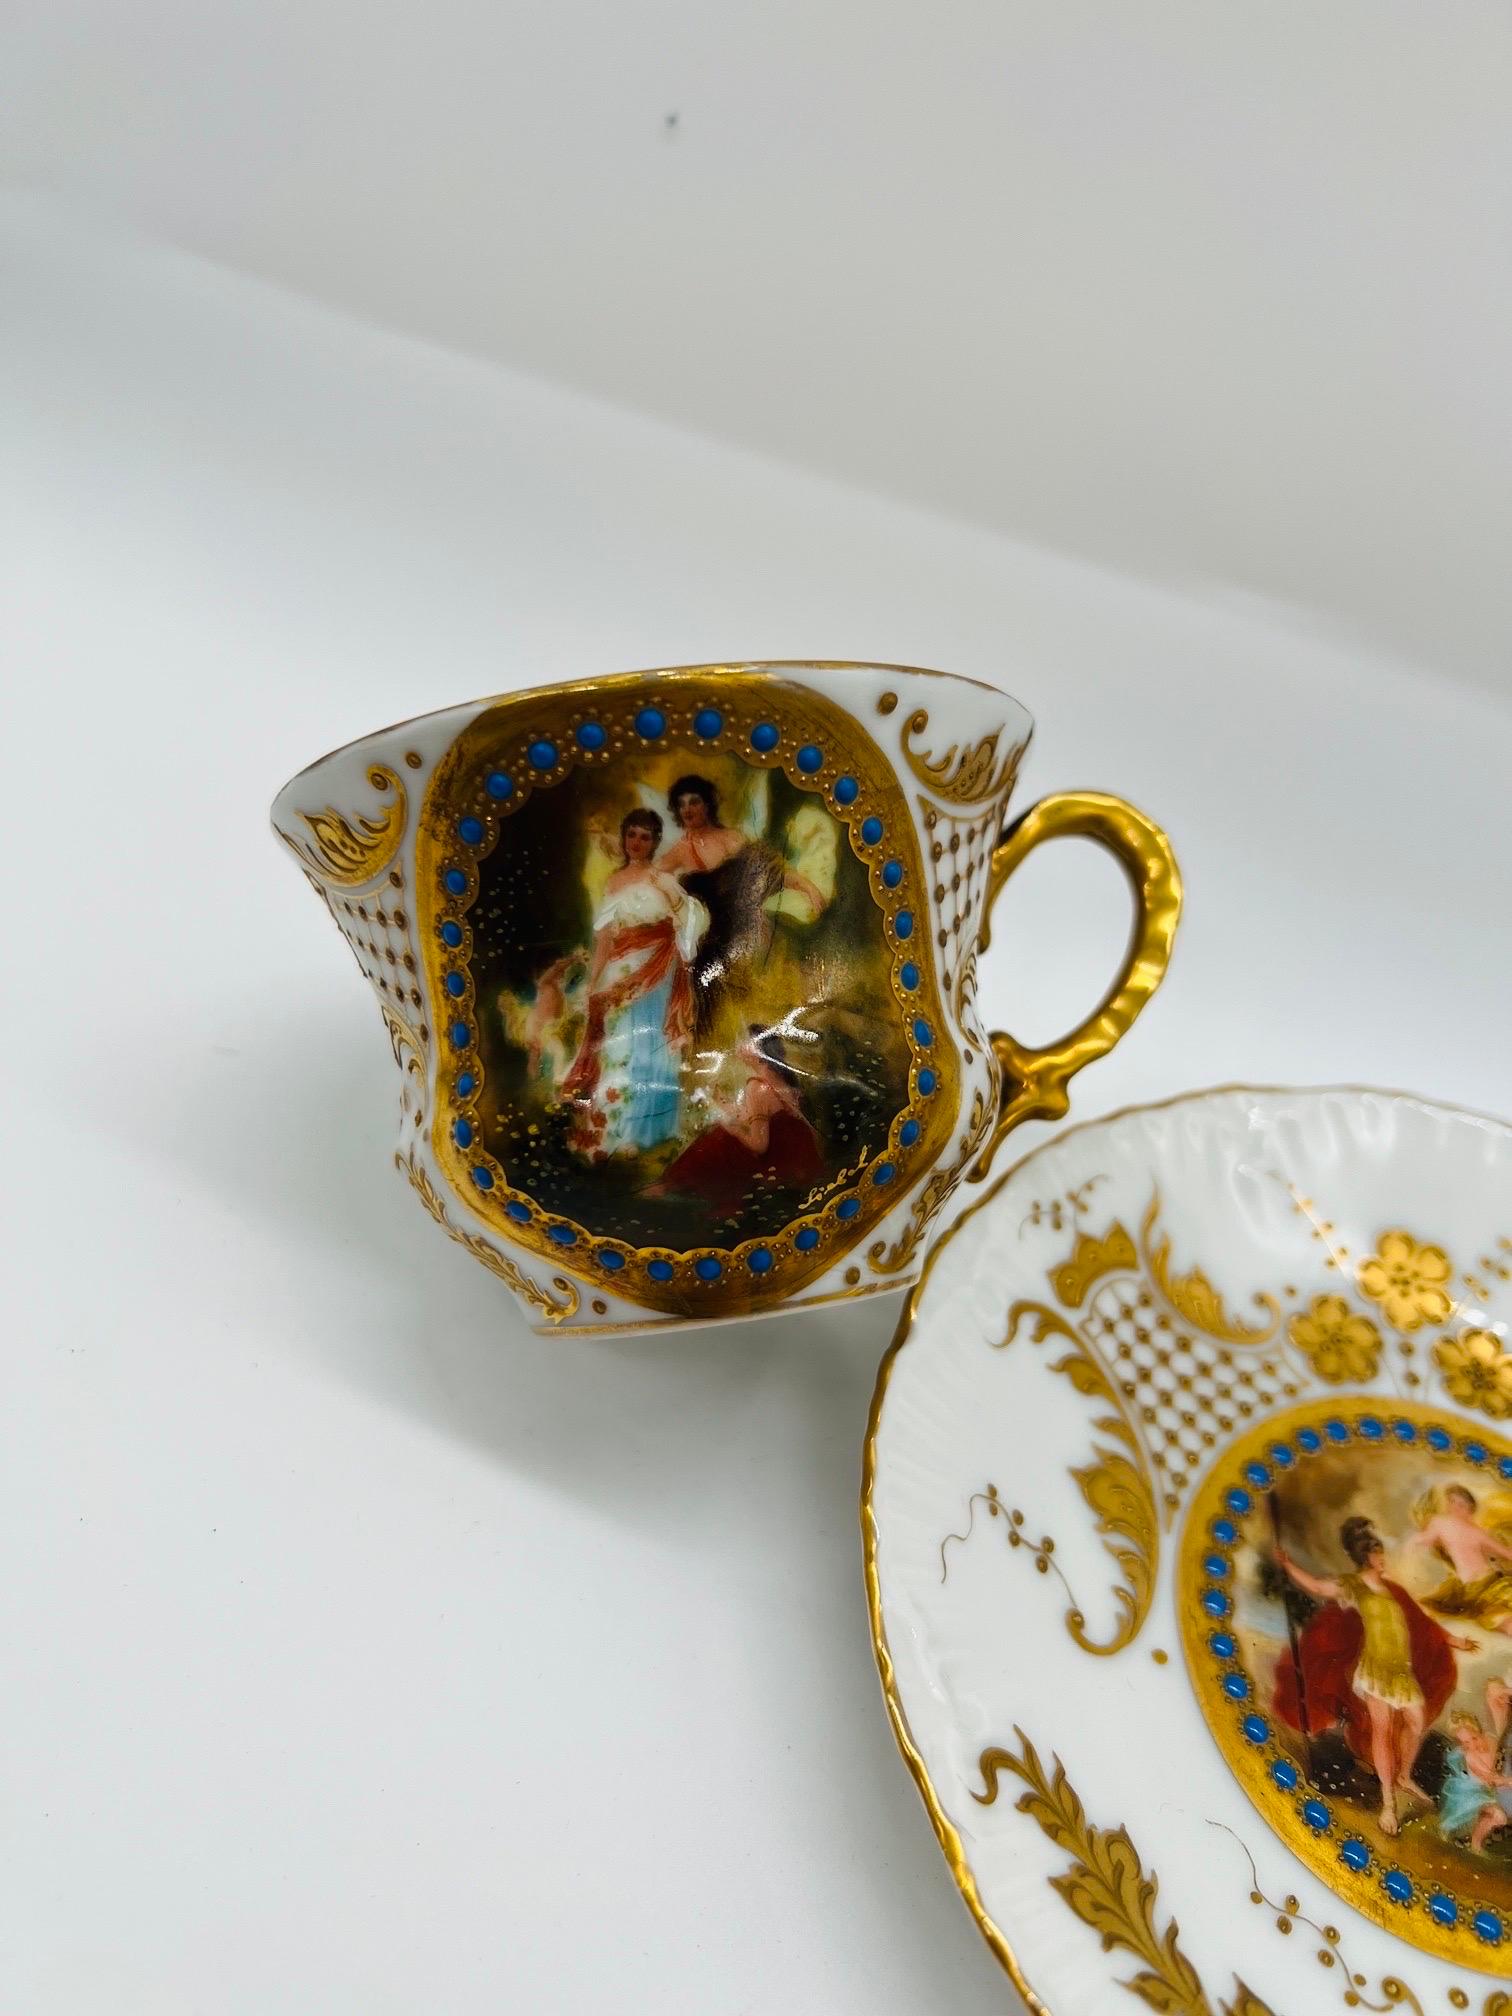 Royal Vienna Style Hand gemalt Porzellan Teetasse & Untertasse. 
Die Tasse und die Untertasse sind reichhaltig mit erhabener Emaille und Vergoldung auf der Oberfläche verziert und zeigen eine Szene mit 3 Damen. Innen stark vergoldet. Unterseite